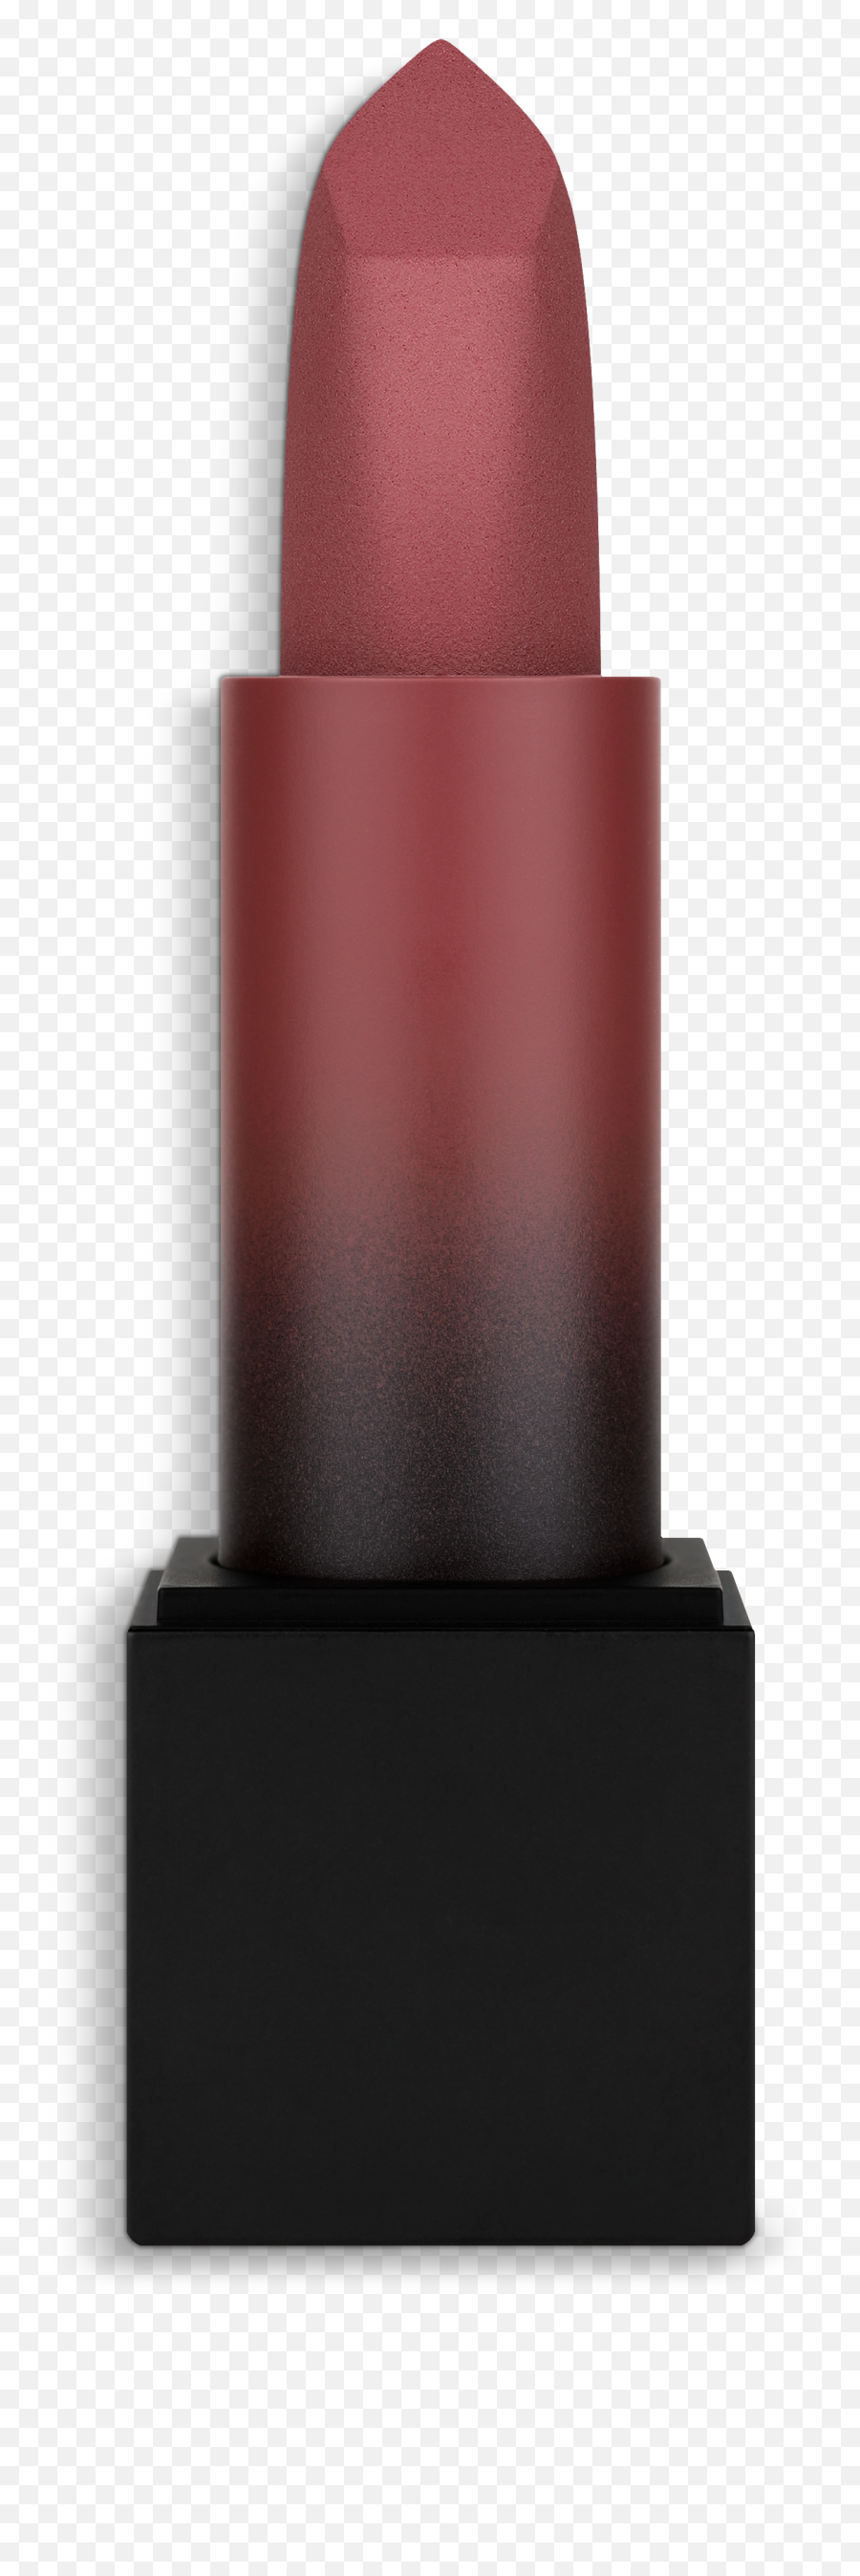 Power Bullet Matte Lipstick - Gloss Png,Lipstick Png